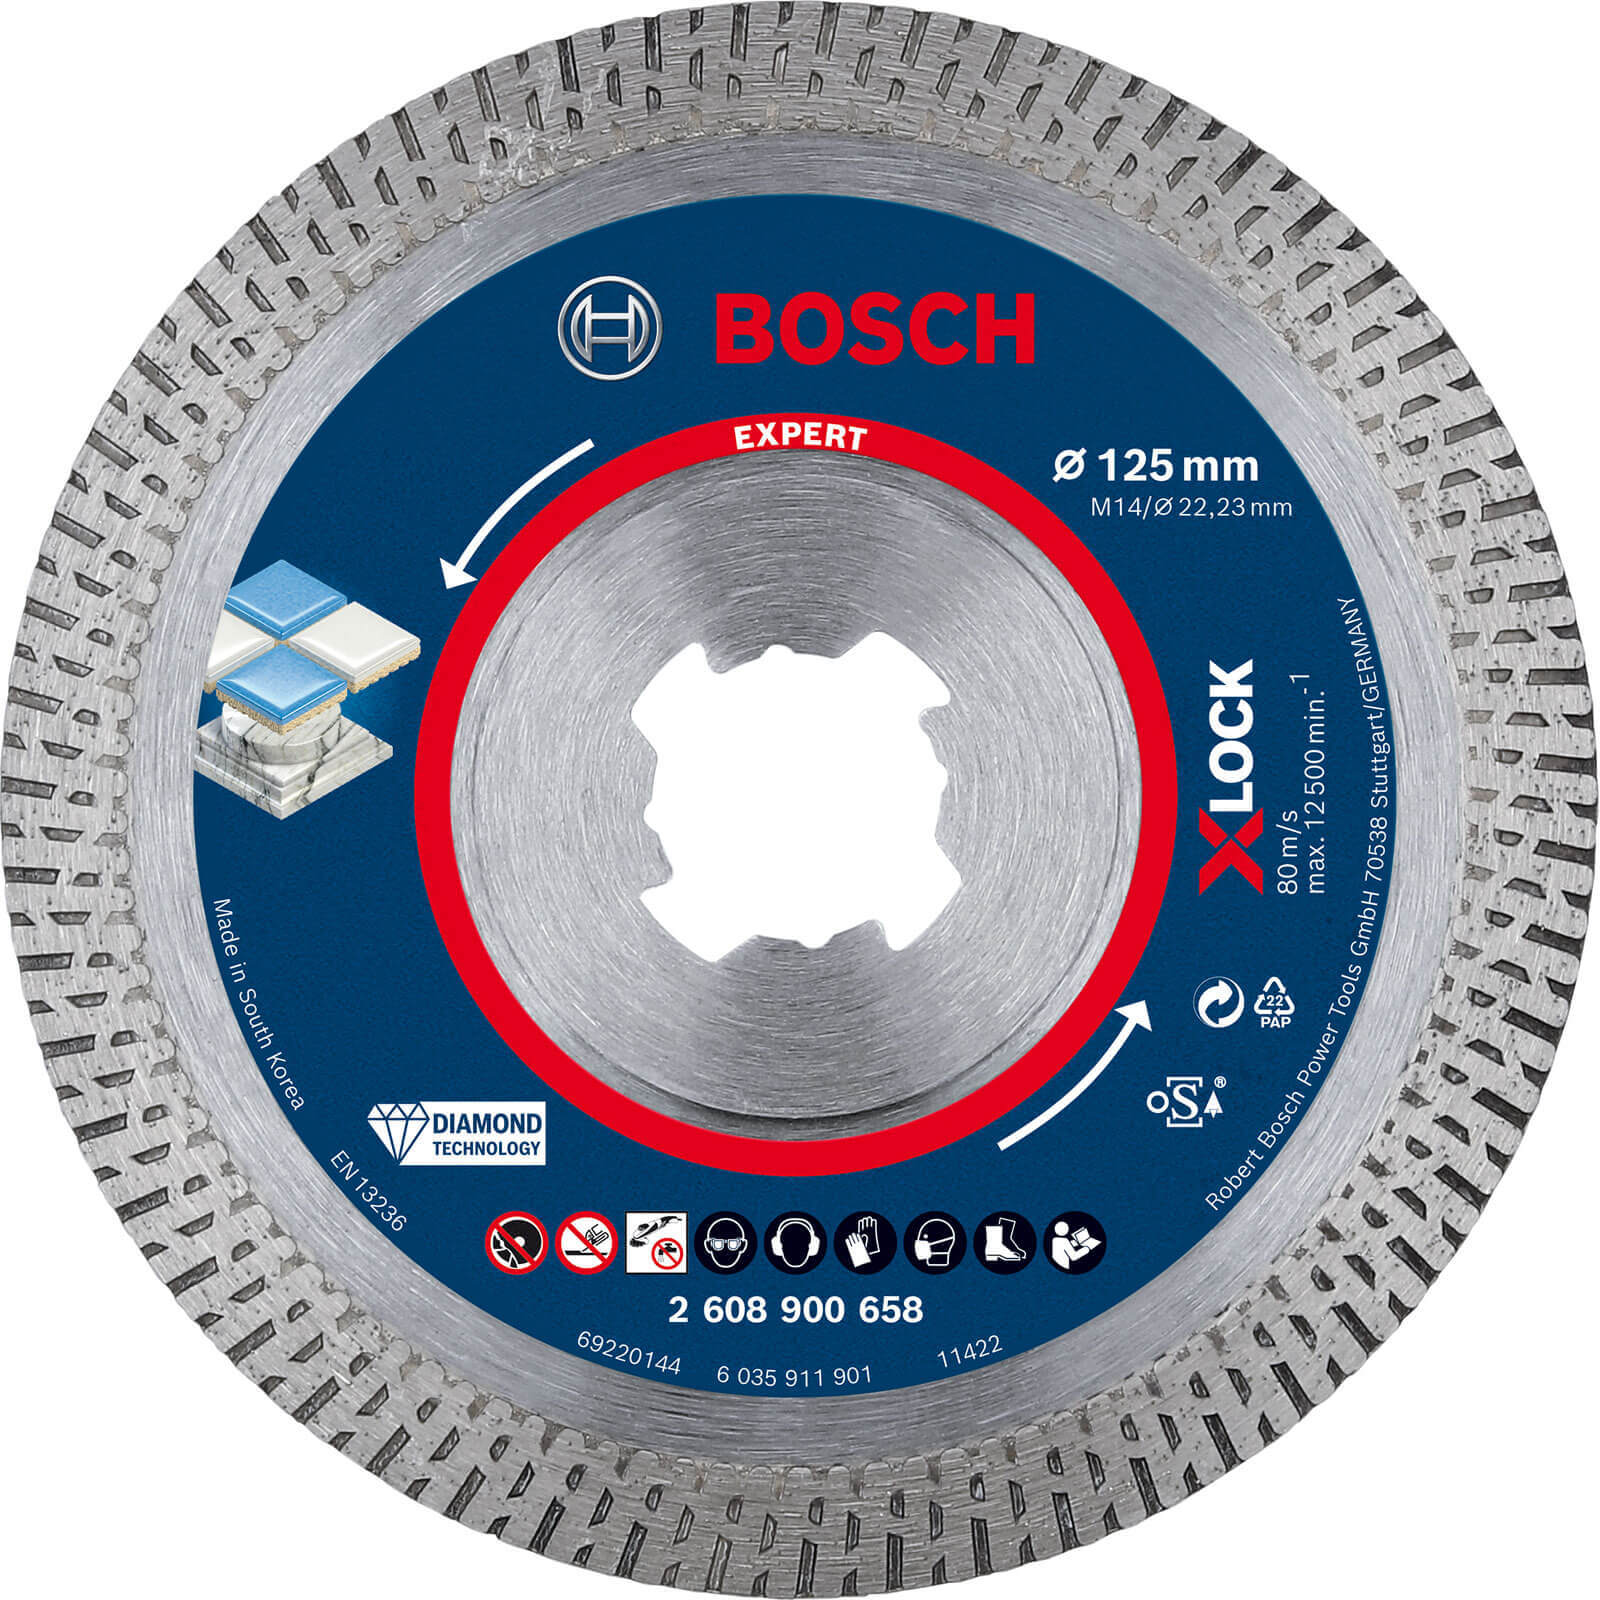 Bosch Expert X Lock Best Diamond Cutting Disc for Hard Ceramics 125mm 1.6mm 22mm